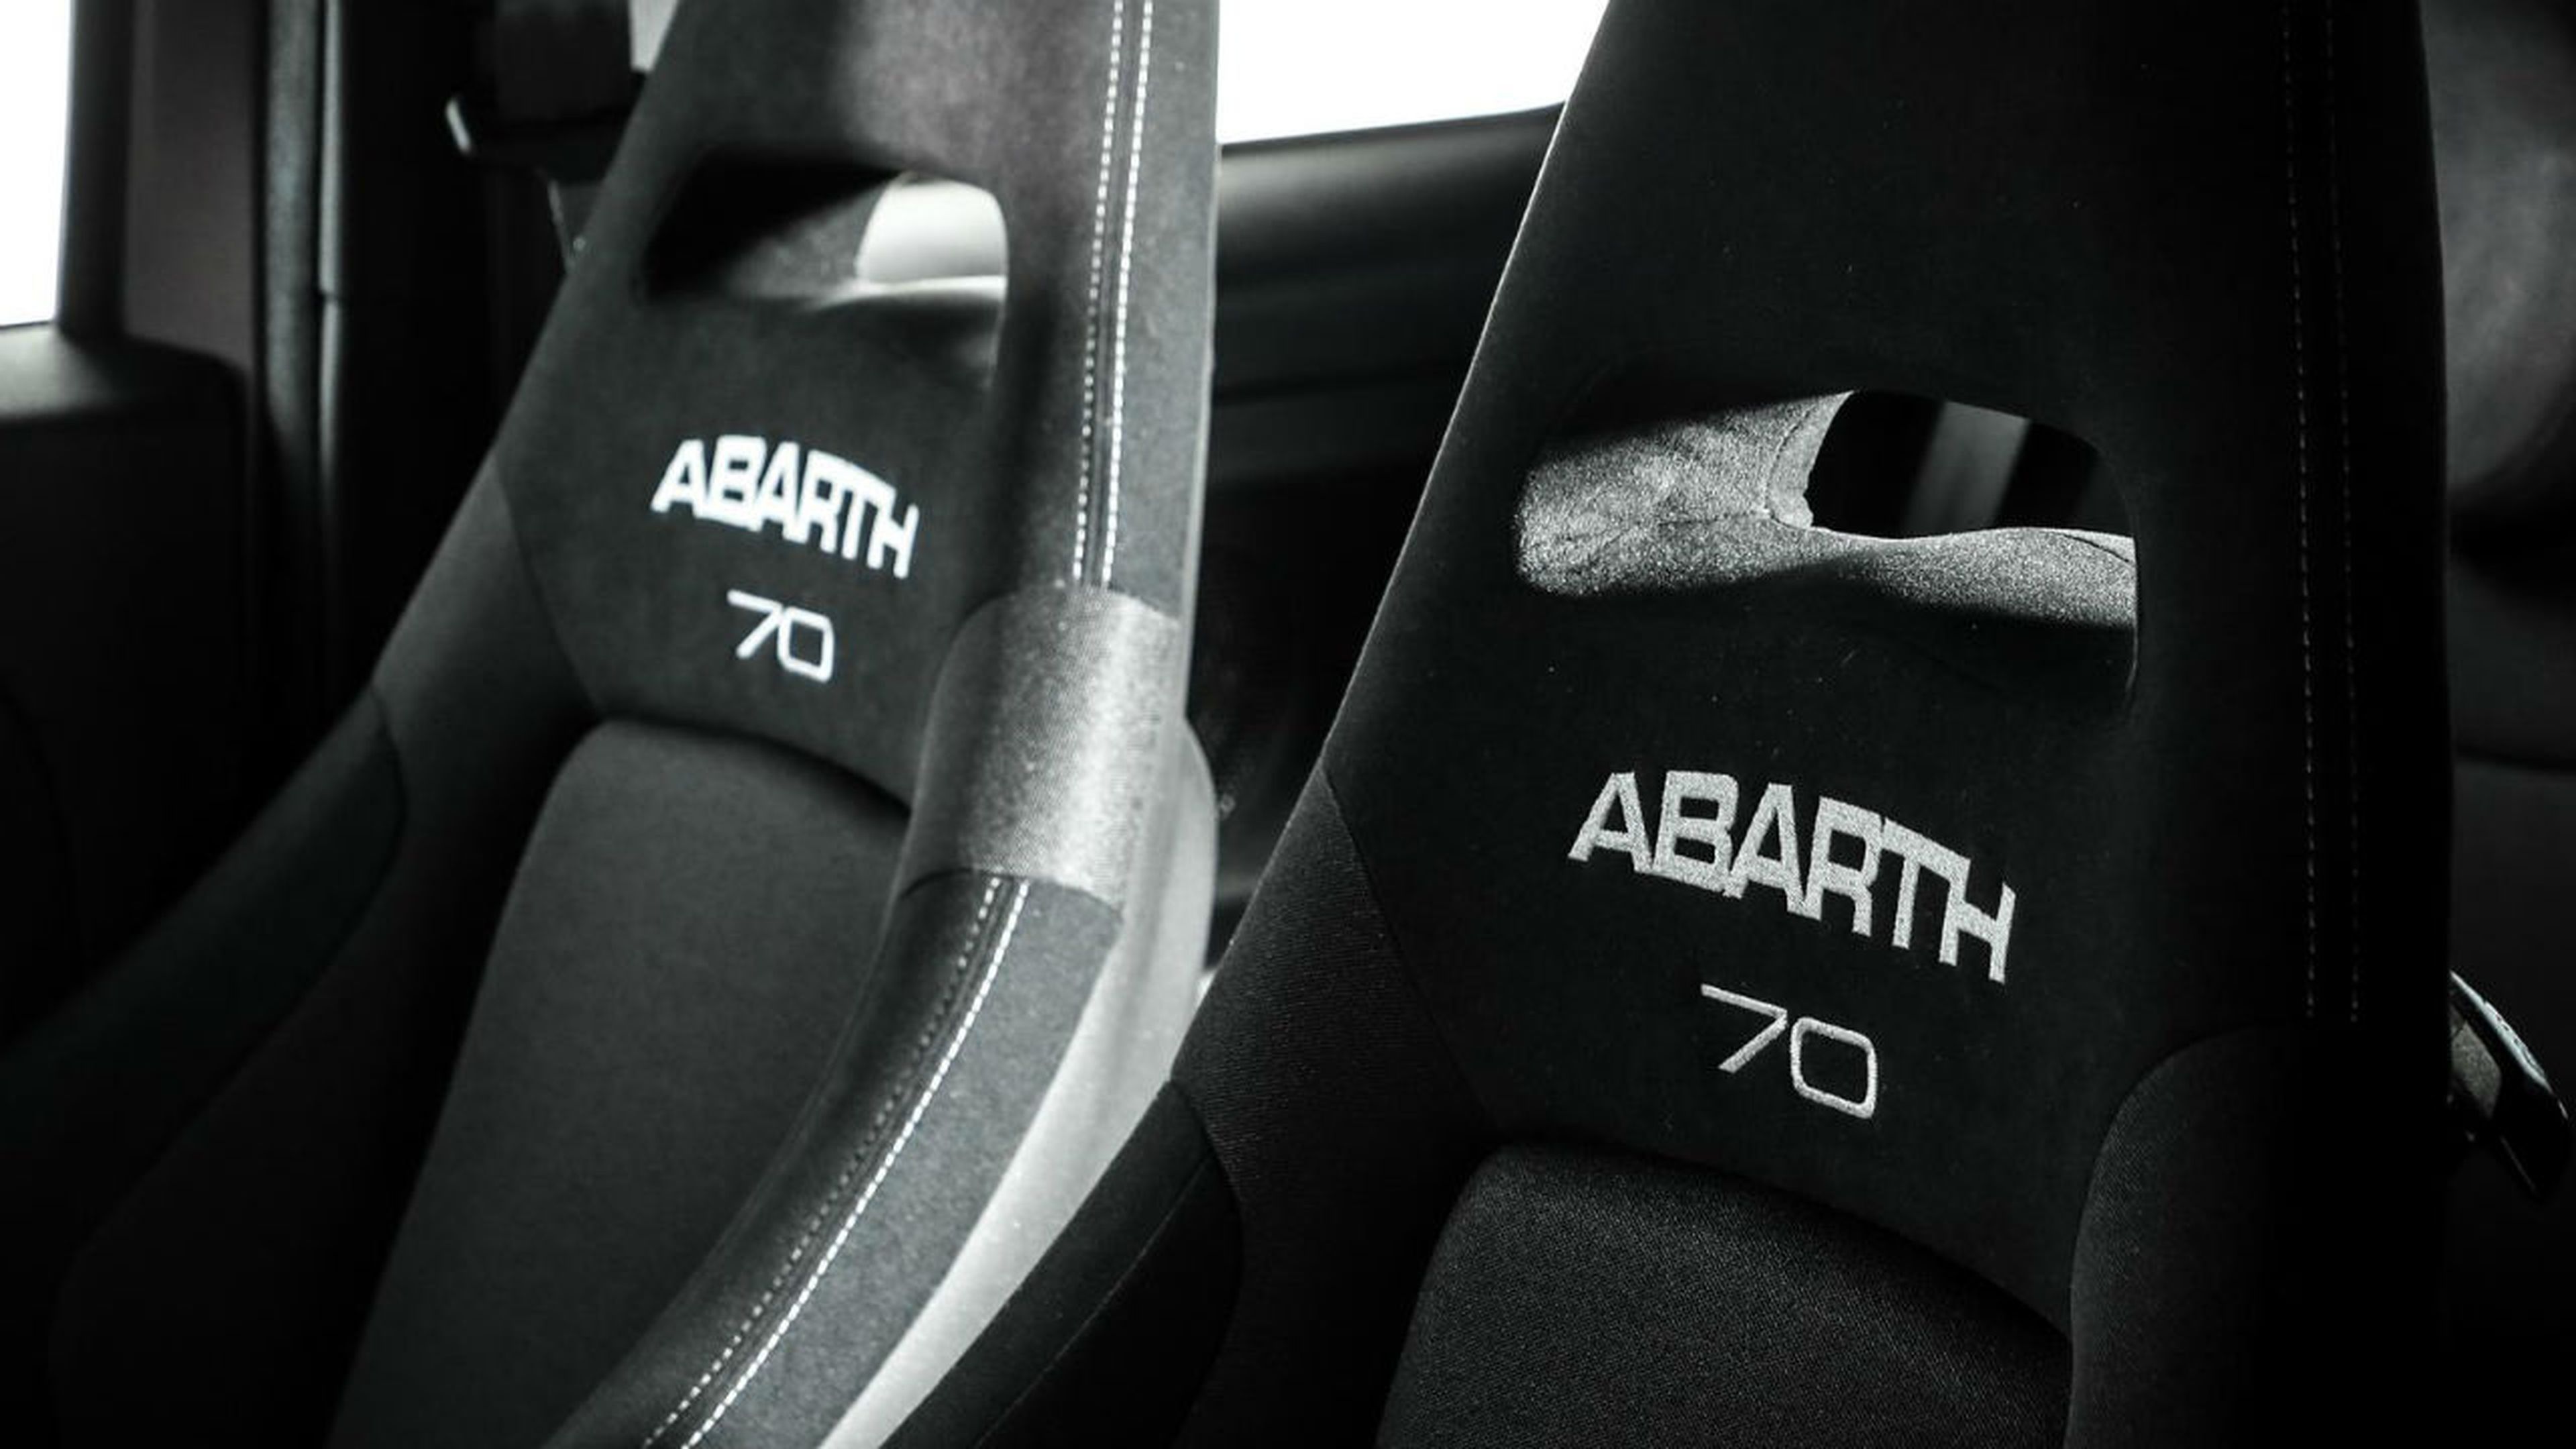 El interior del Abarth 595 Pista cuenta con unos asientos deportivos.